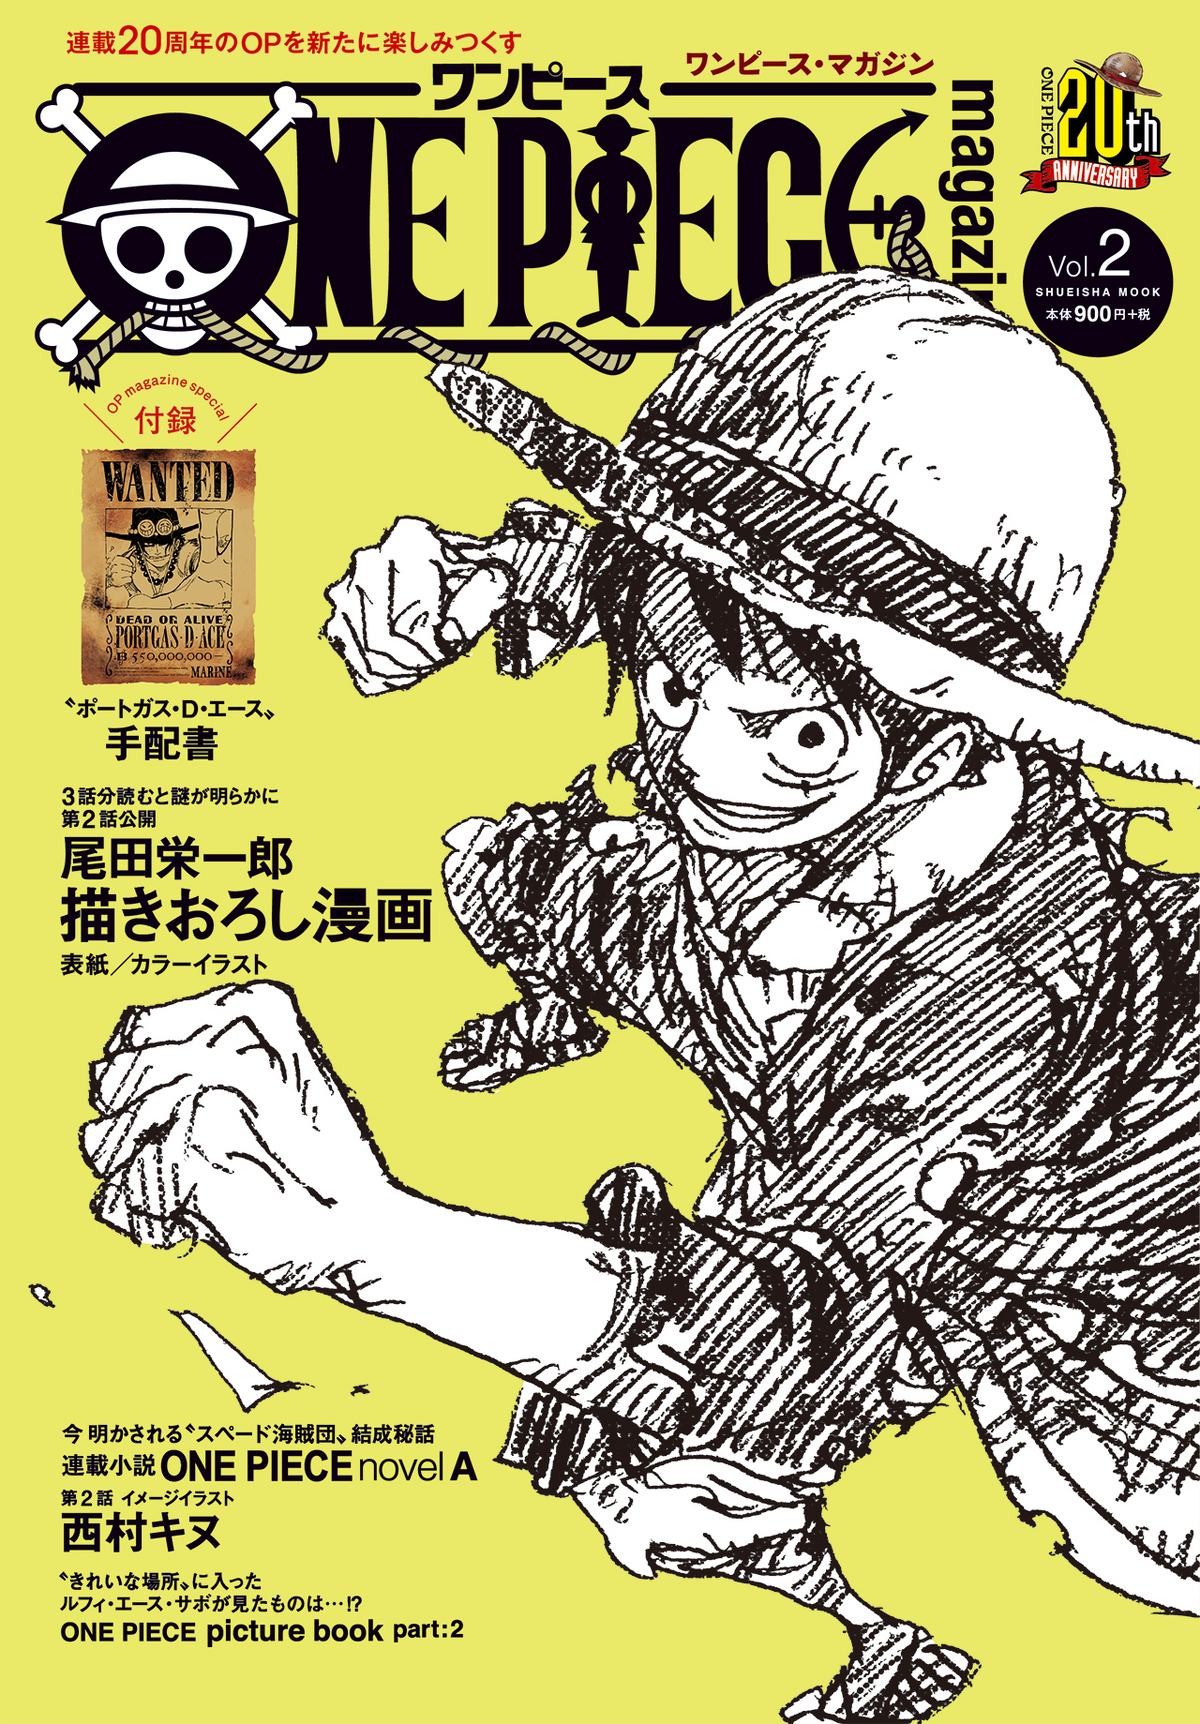 One Piece Magazine Vol.2, One Piece Wiki